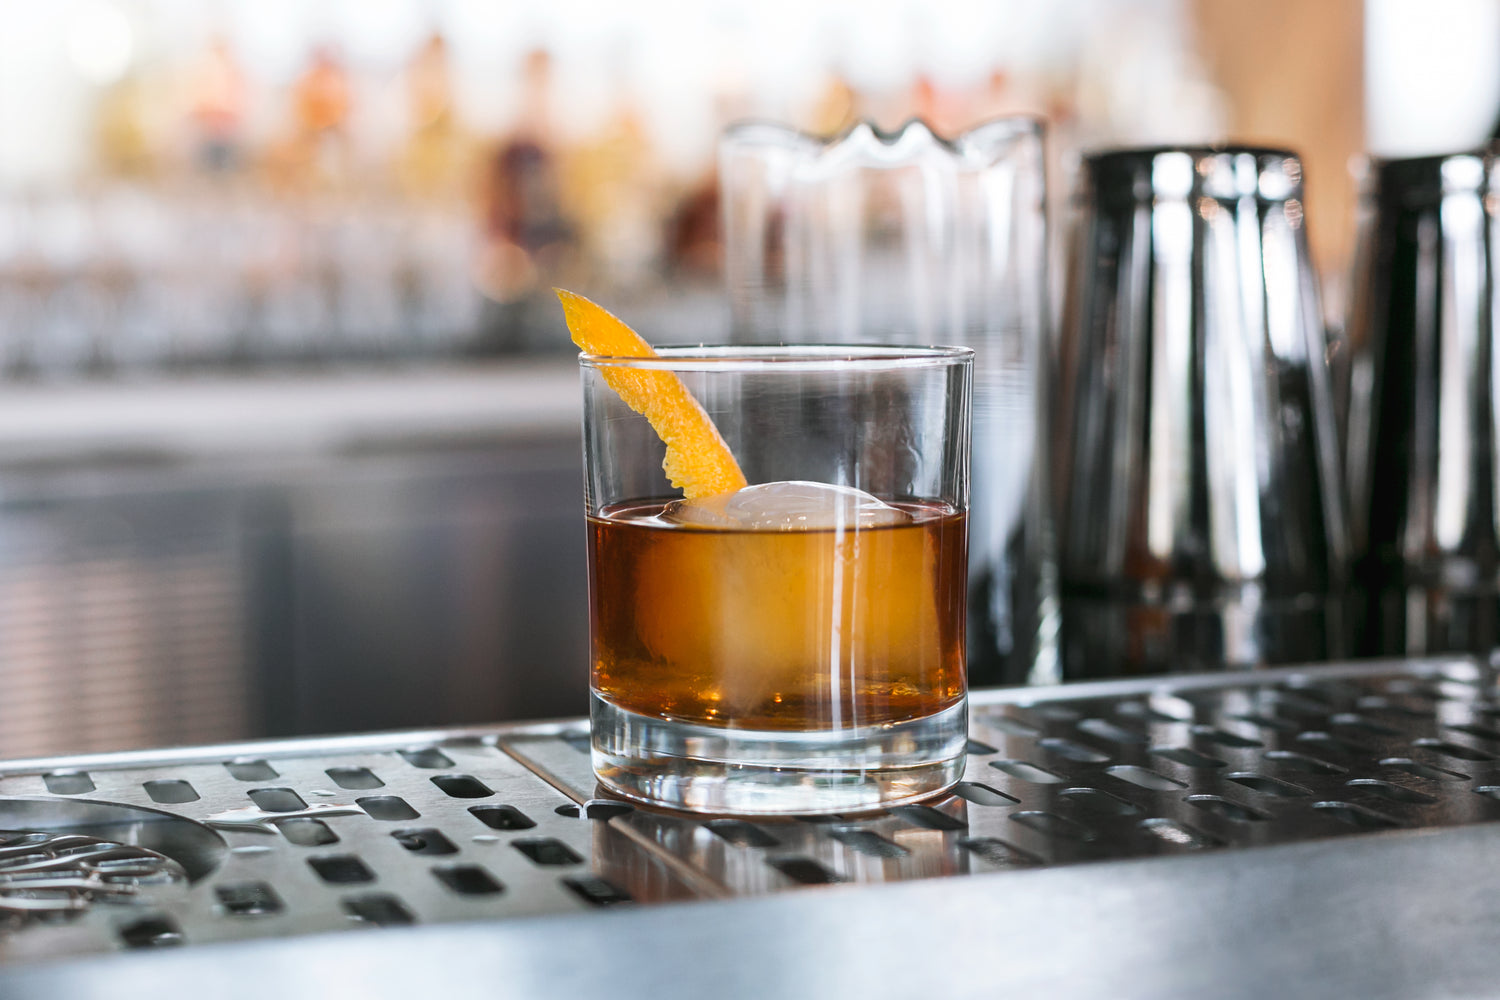 Bourbon at a bar